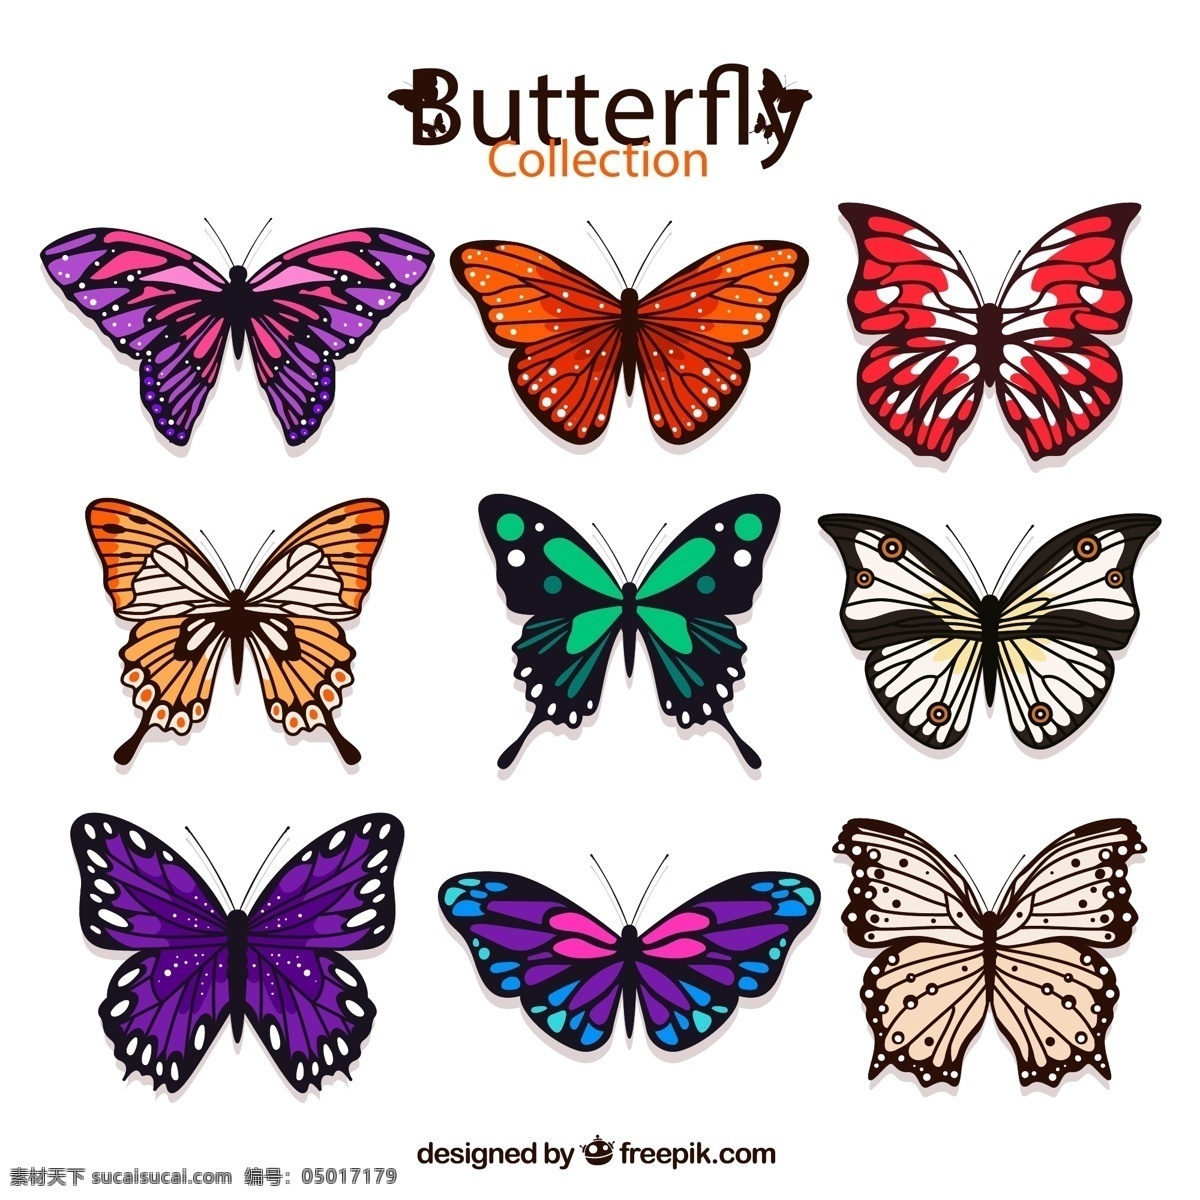 彩色 蝴蝶 昆虫 矢量图 格式 psd素材 矢量 高清图片